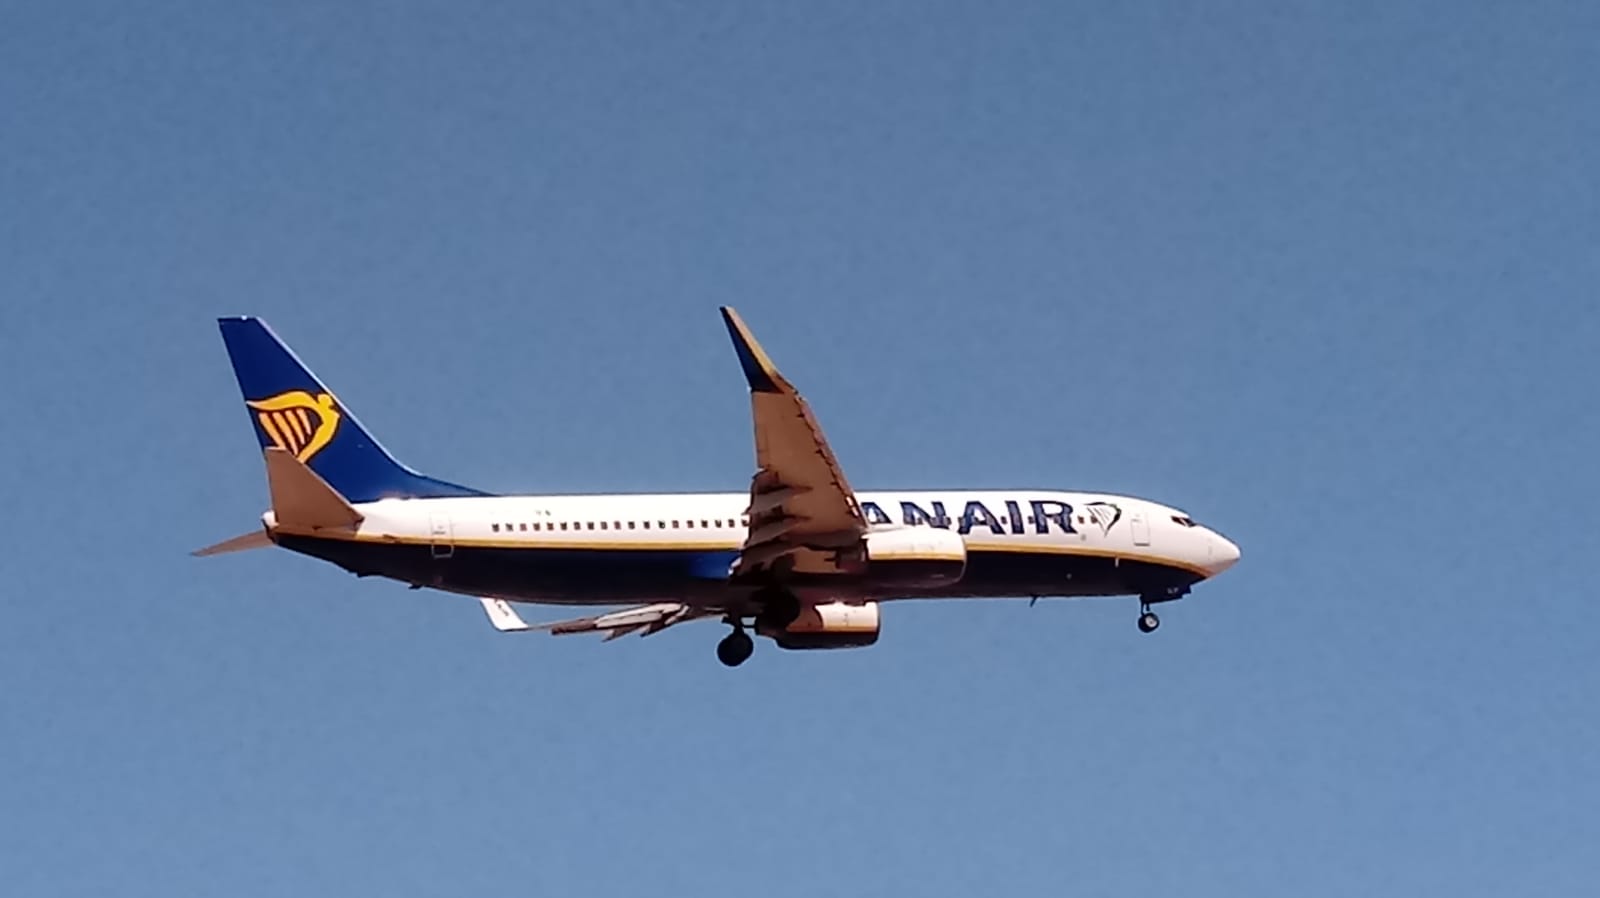 Flugzeug der Ryanair im Landeanflug